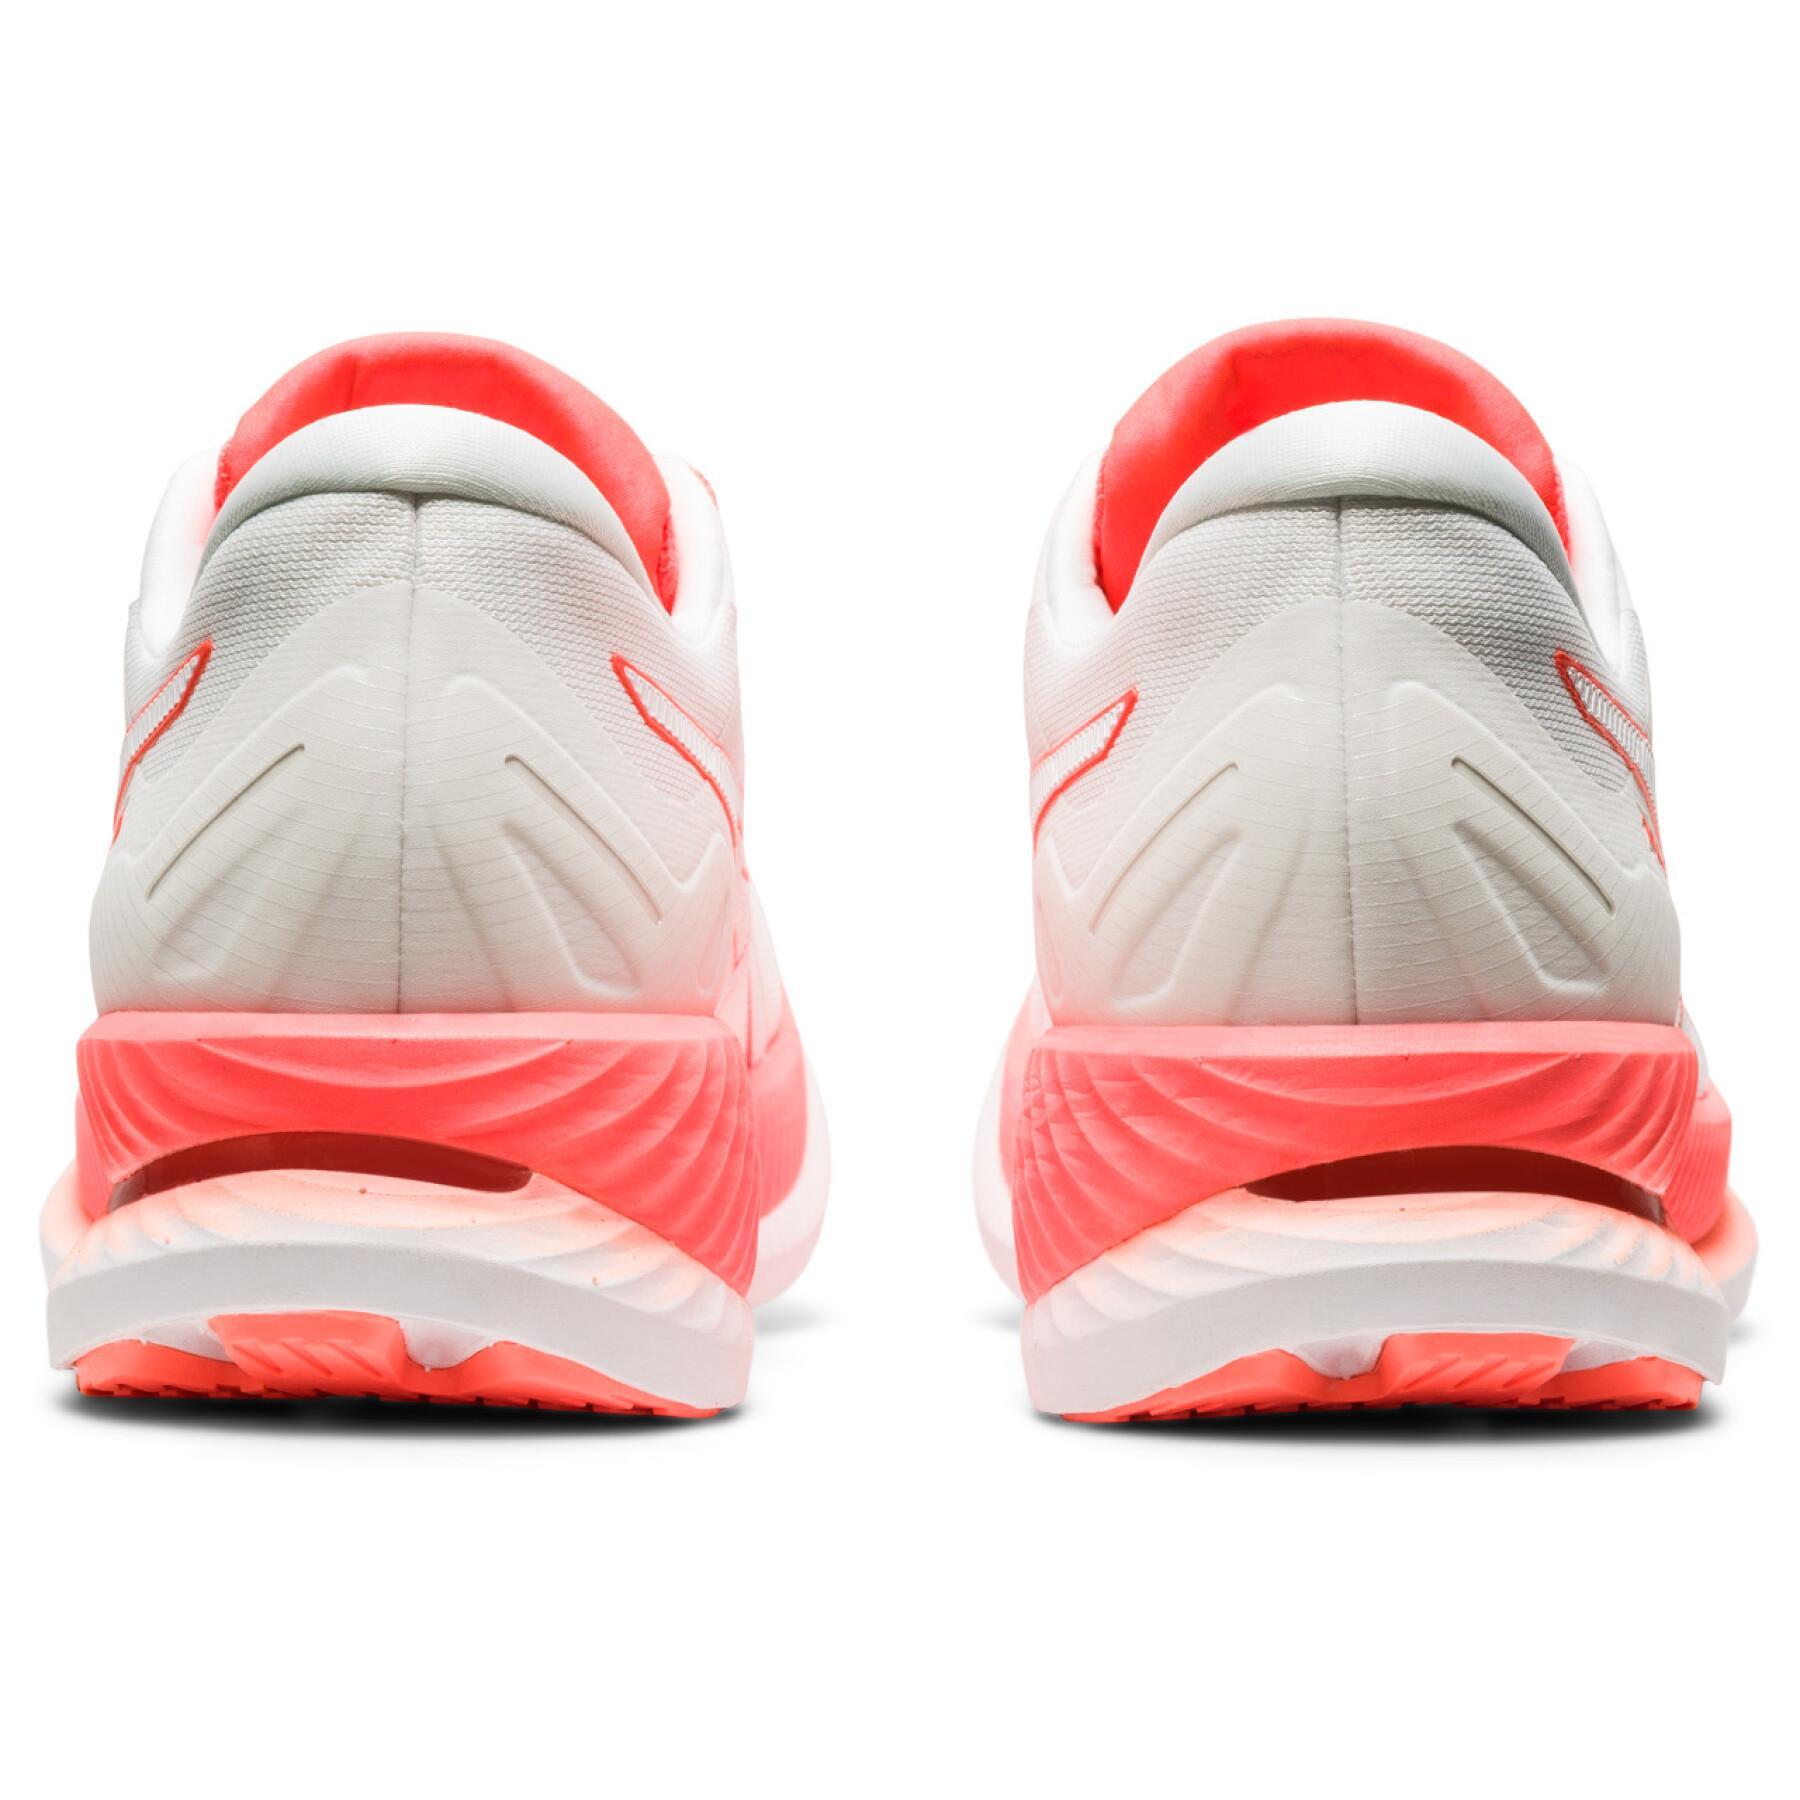 Chaussures de running femme Asics Glideride Tokyo